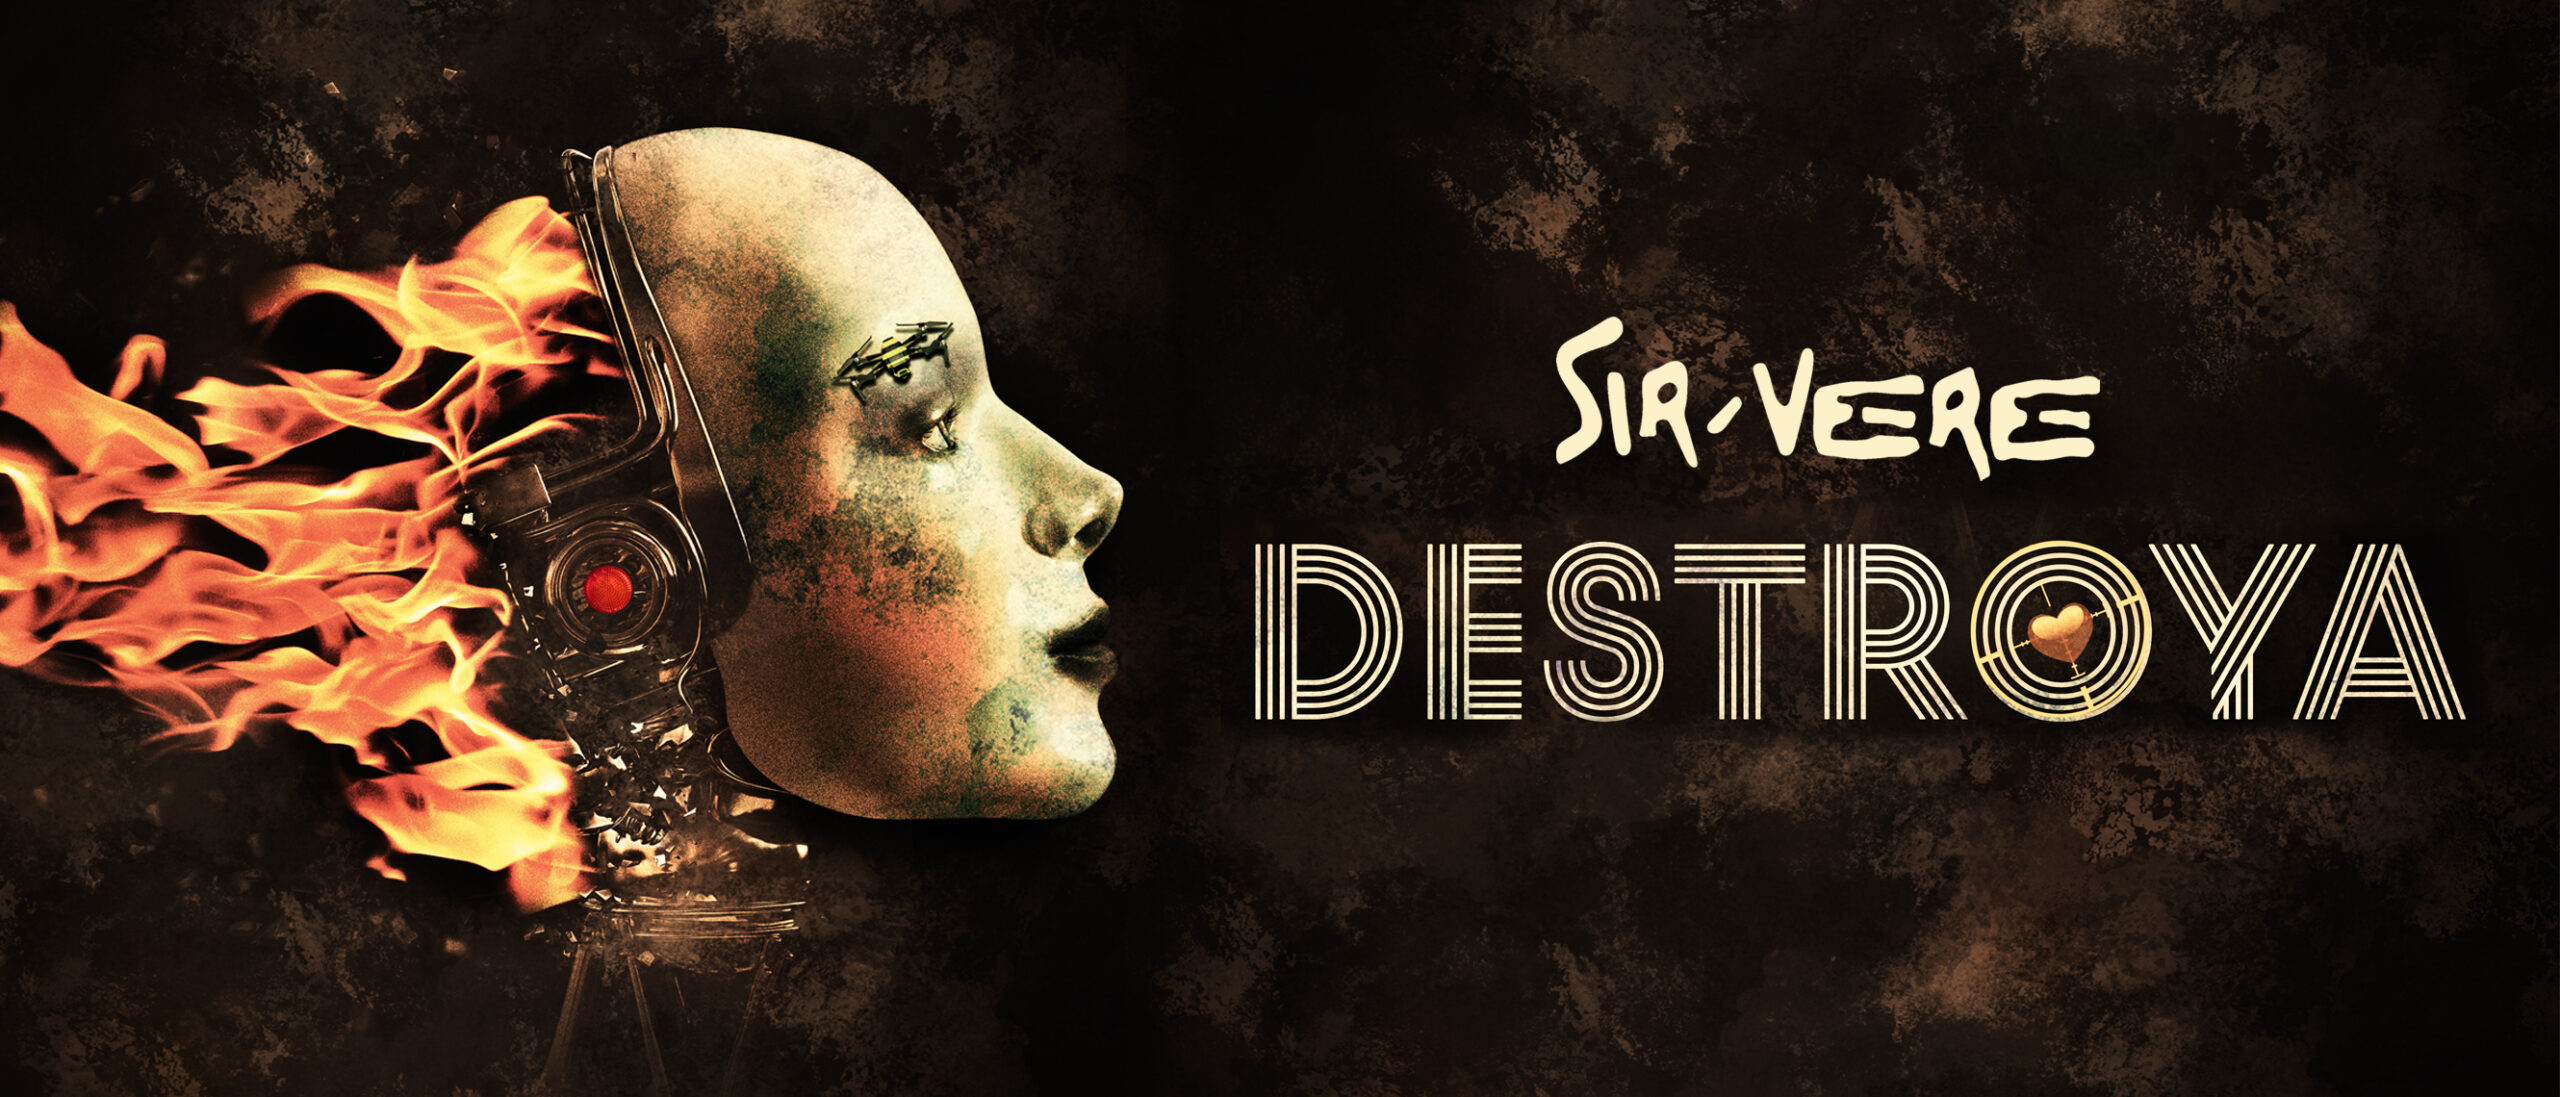 DESTROYA by SIR-VERE cover artwork